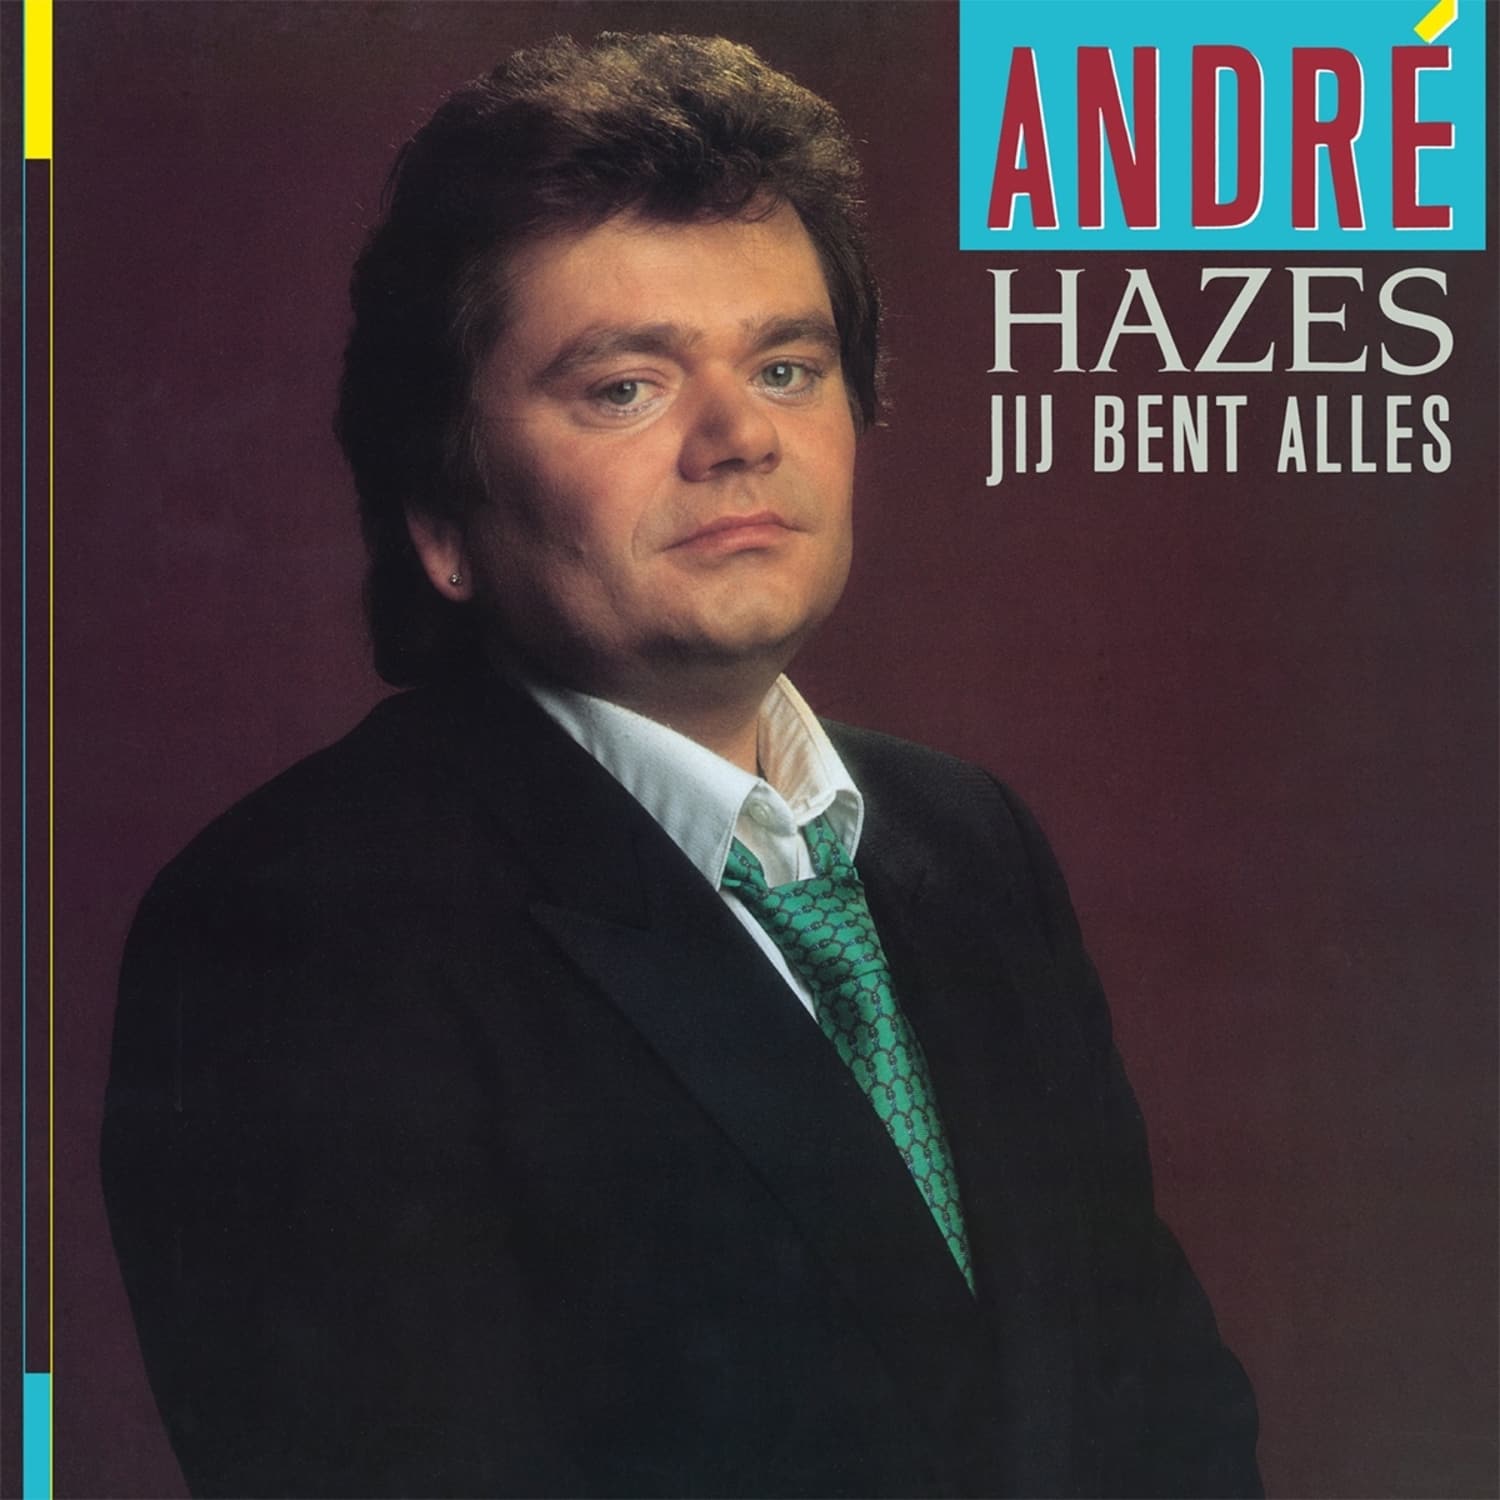  Andre Hazes - JIJ BENT ALLES 